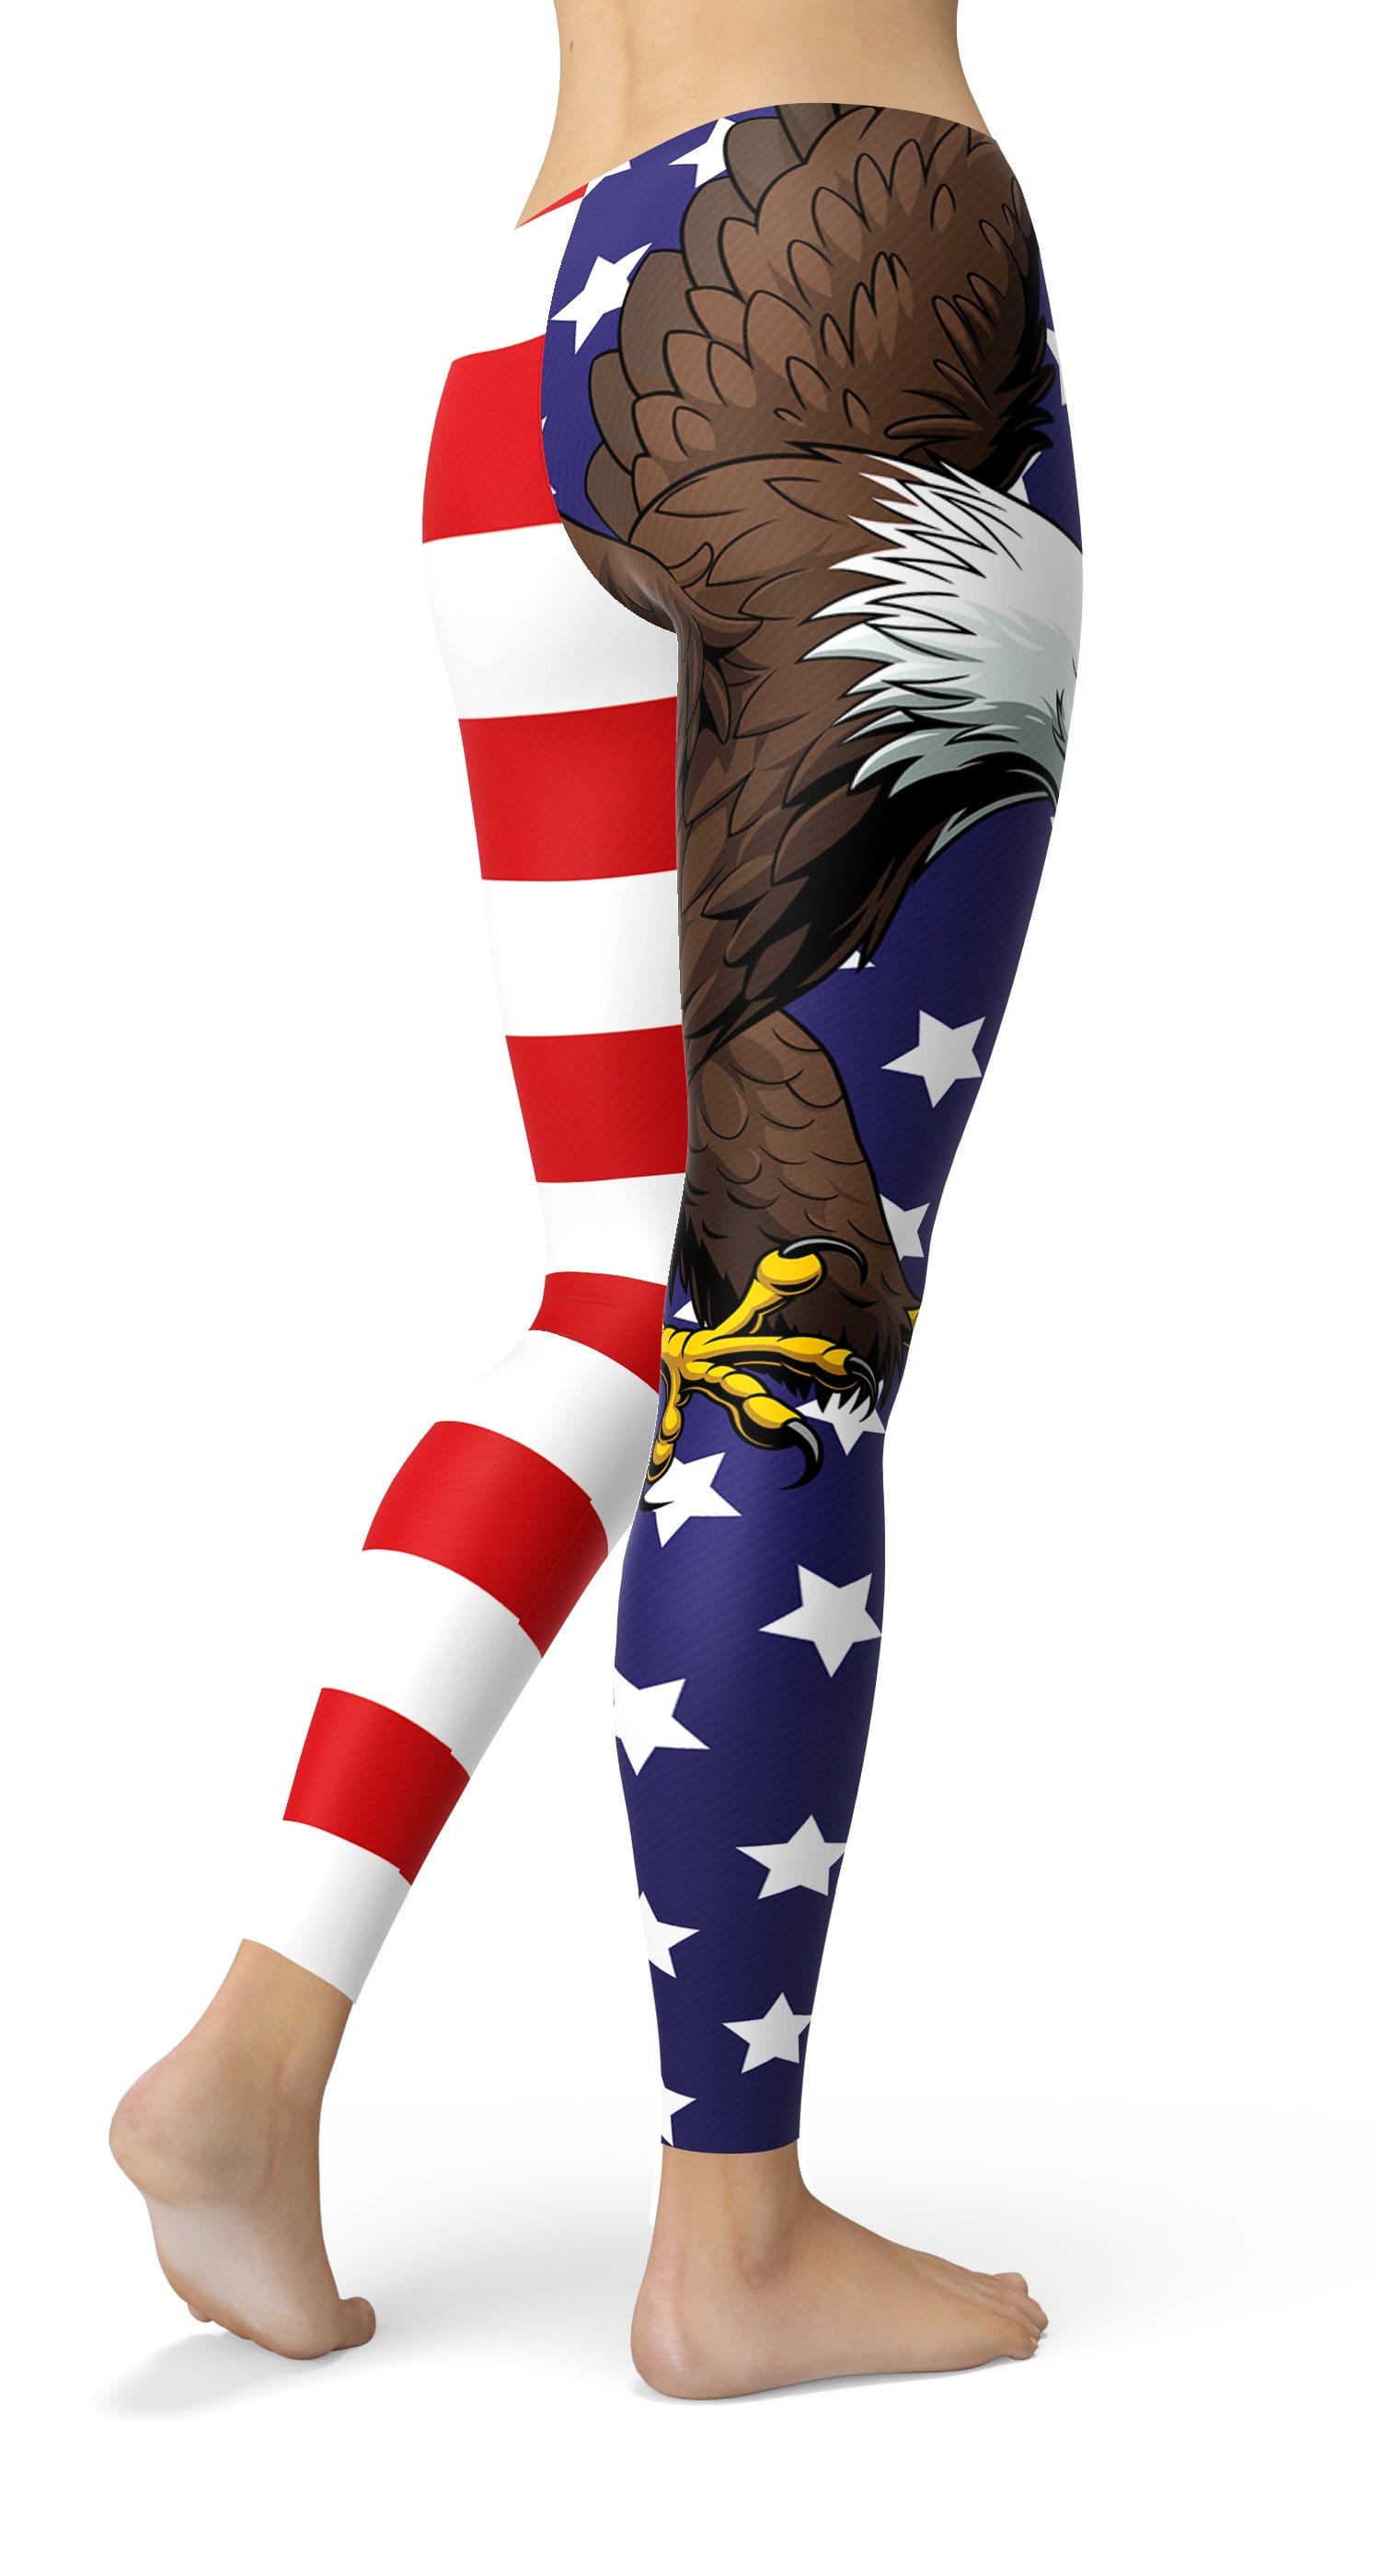 USA PRIDE Leggings - US FITGIRLS